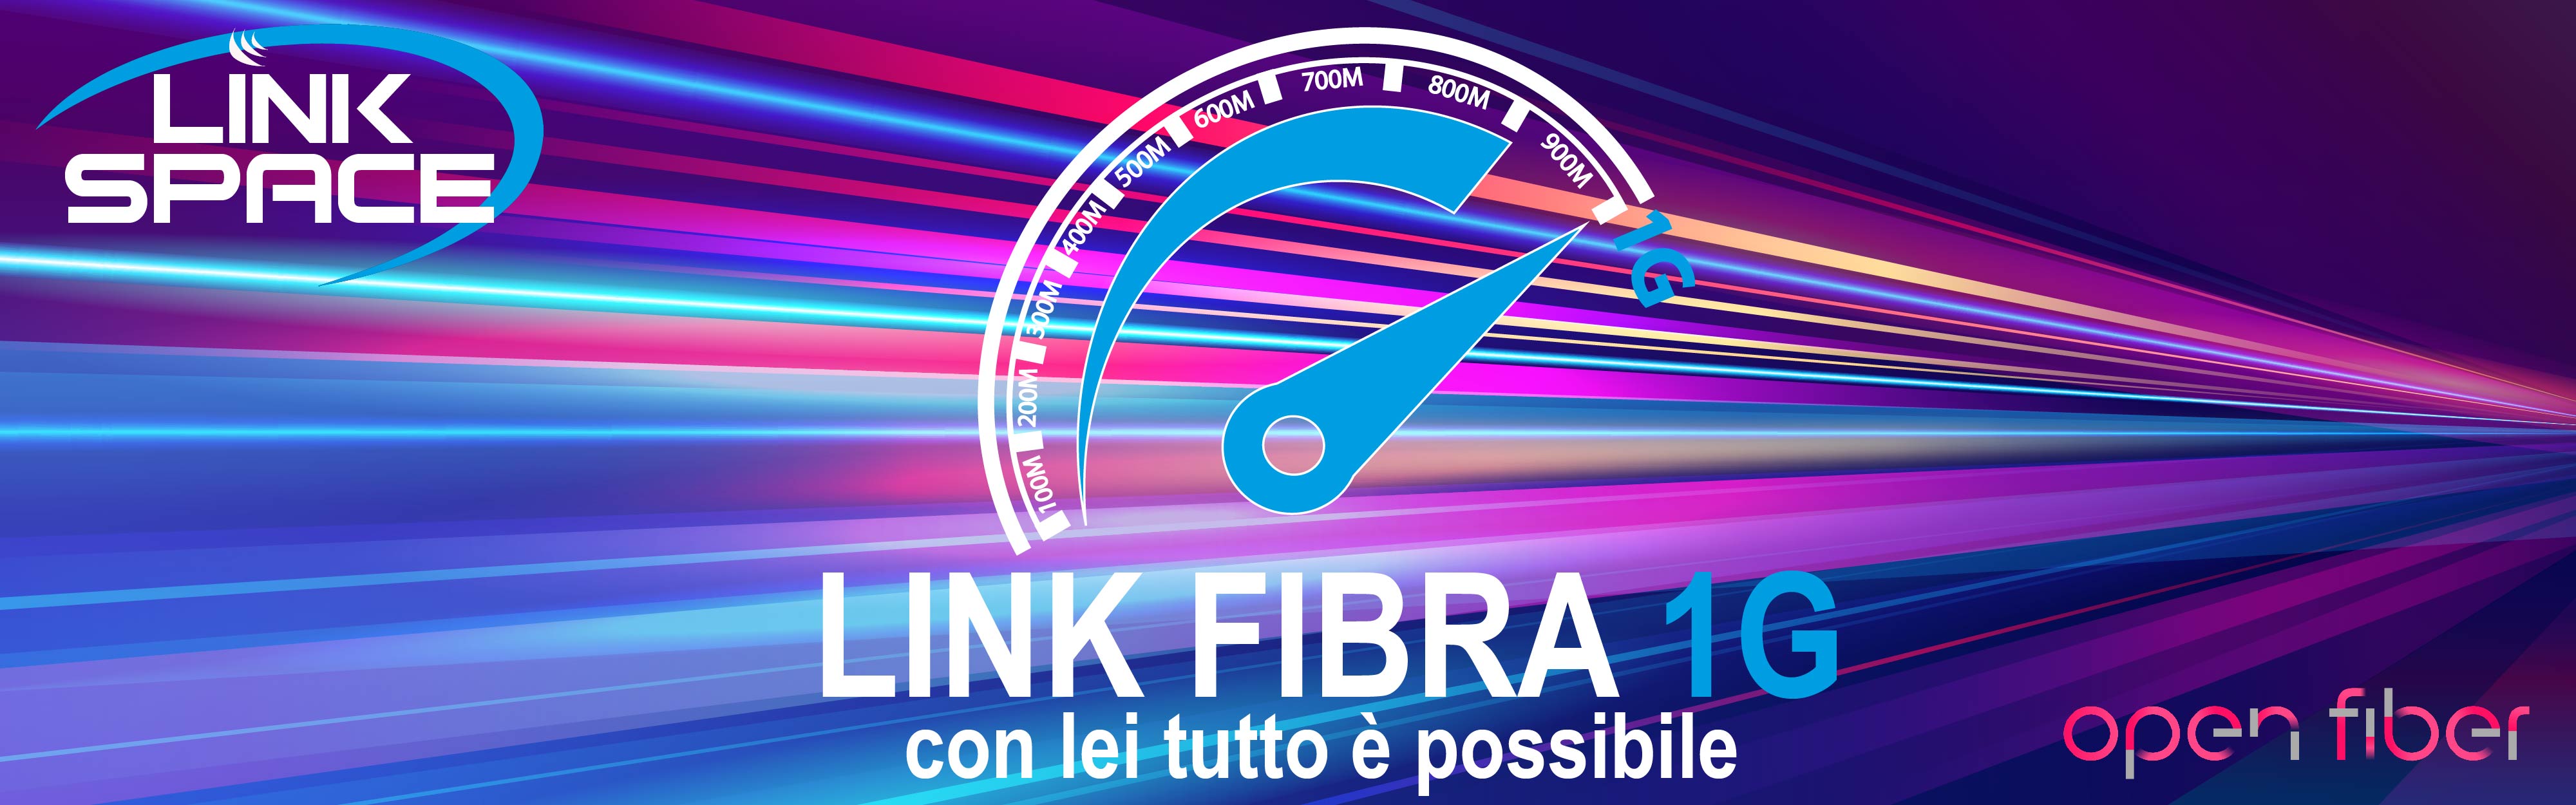 Offerta Link FIBRA 1G